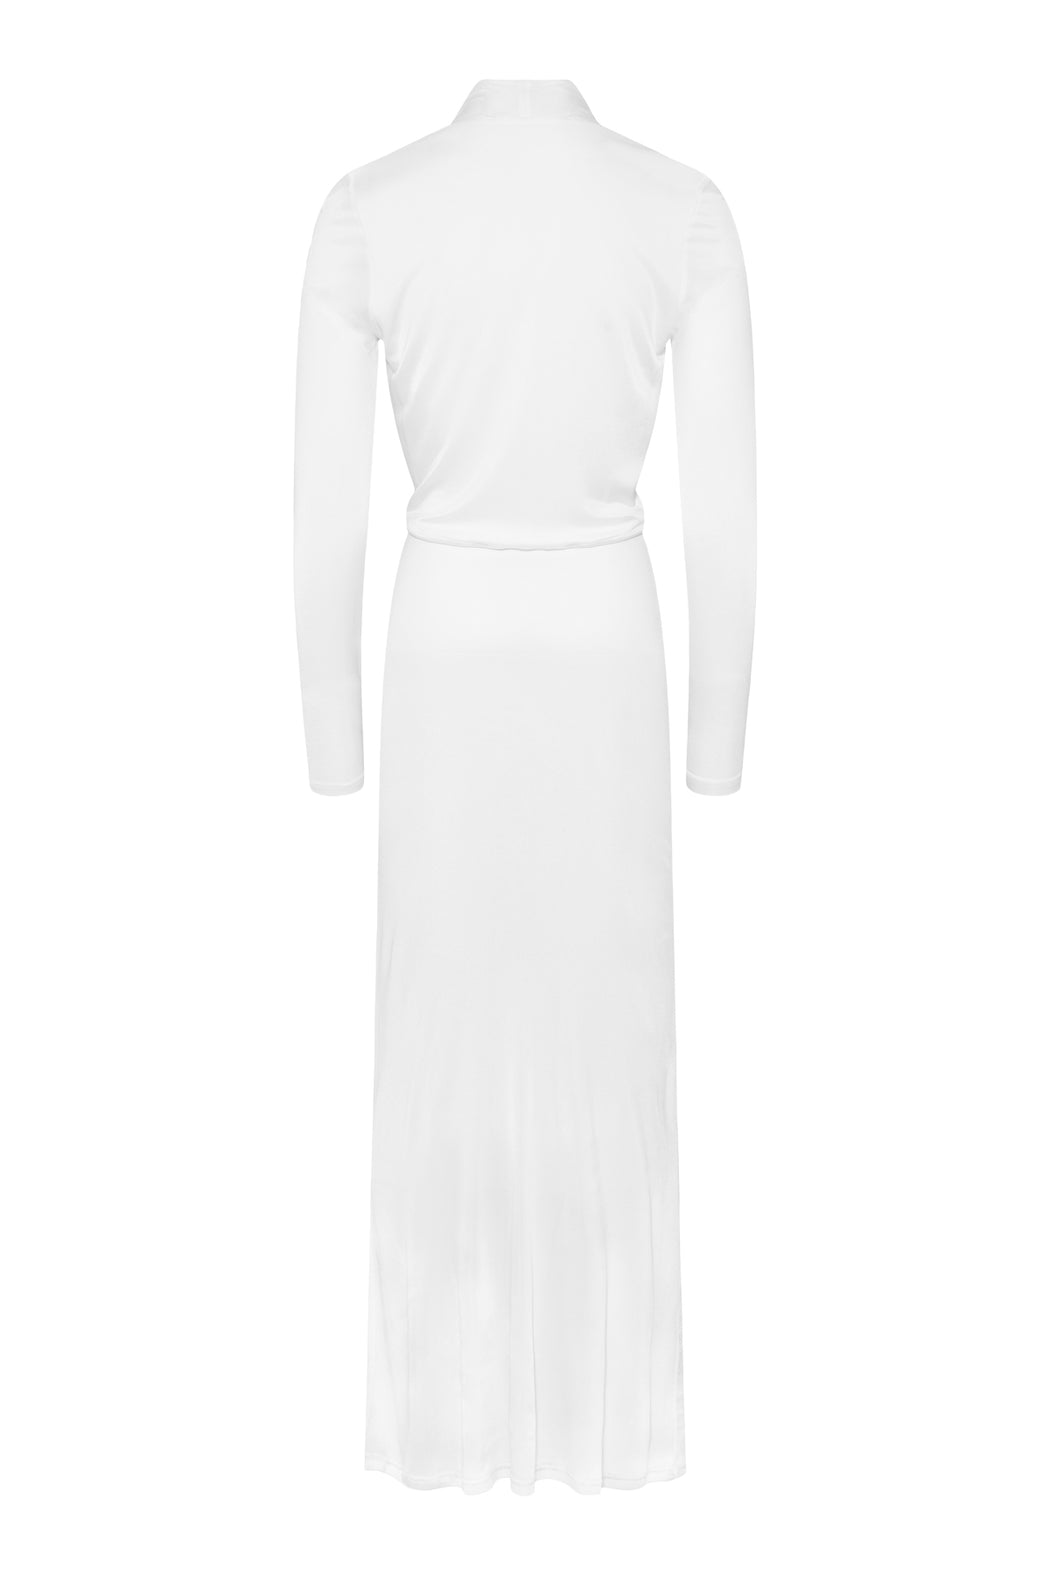 Envelope1976 Opening dress, White Dress White